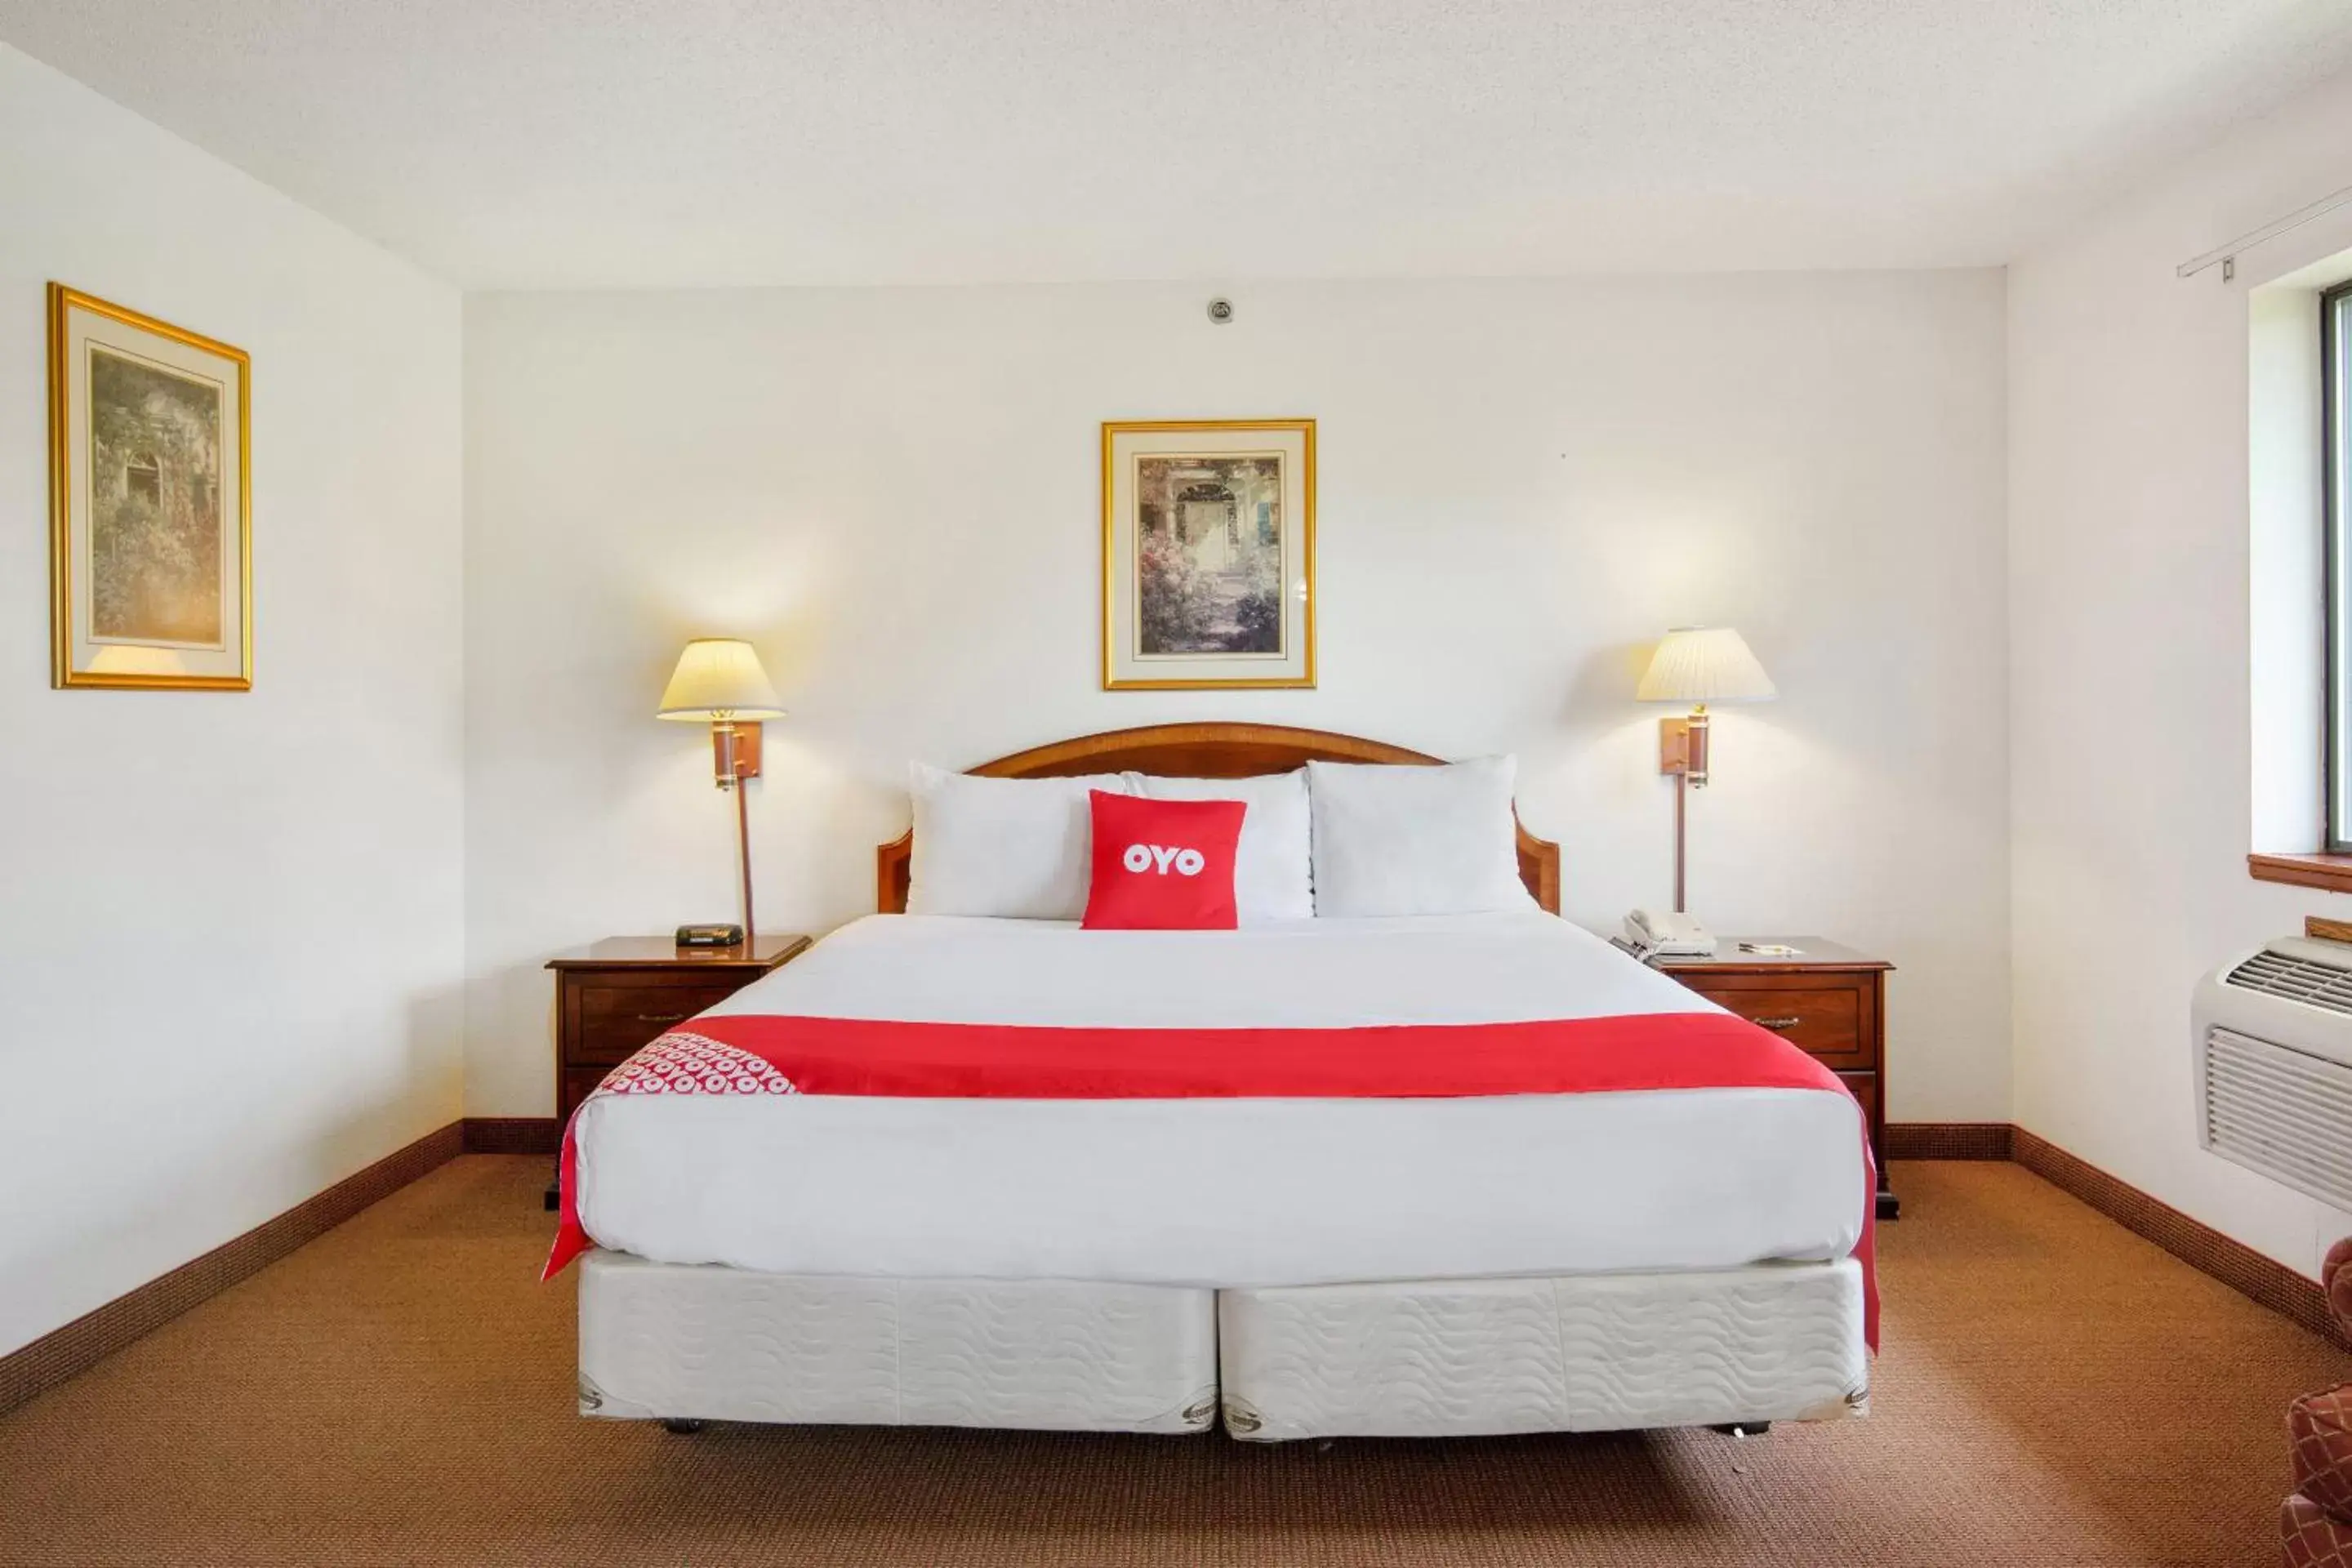 Bedroom, Bed in OYO Hotel Portage I-94